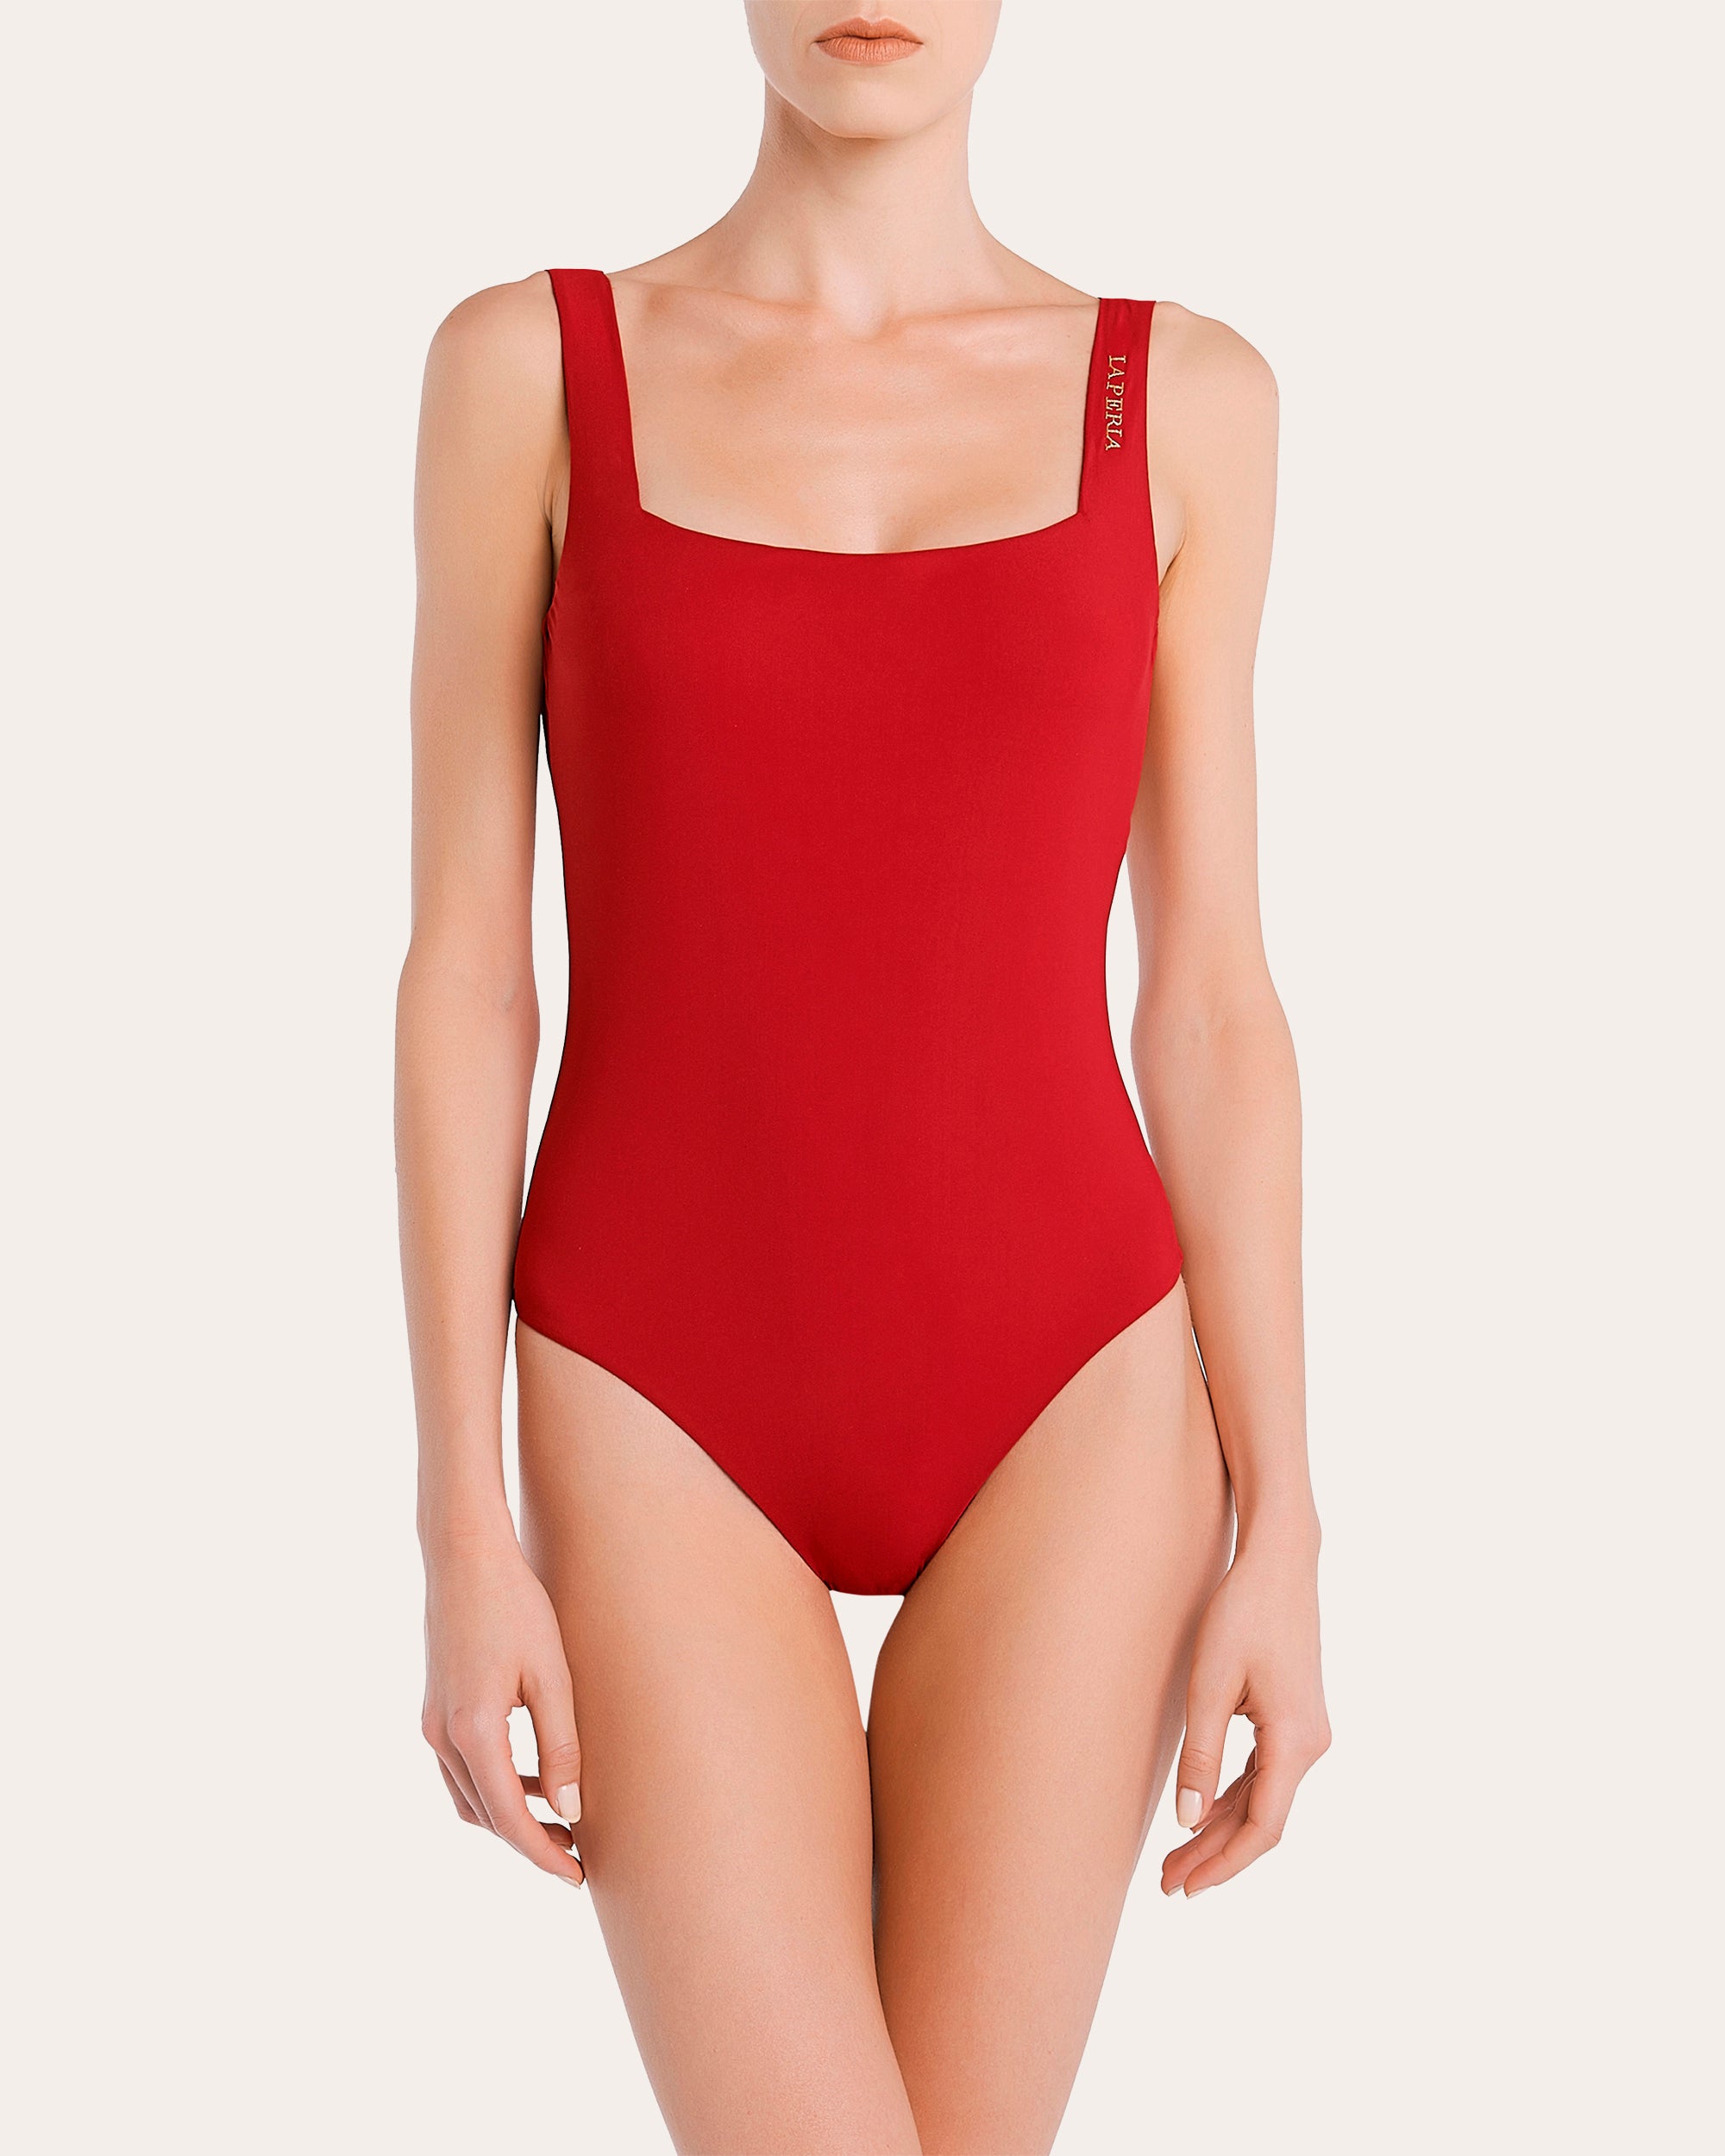 La Perla Iconic Non-Wired Swimsuit